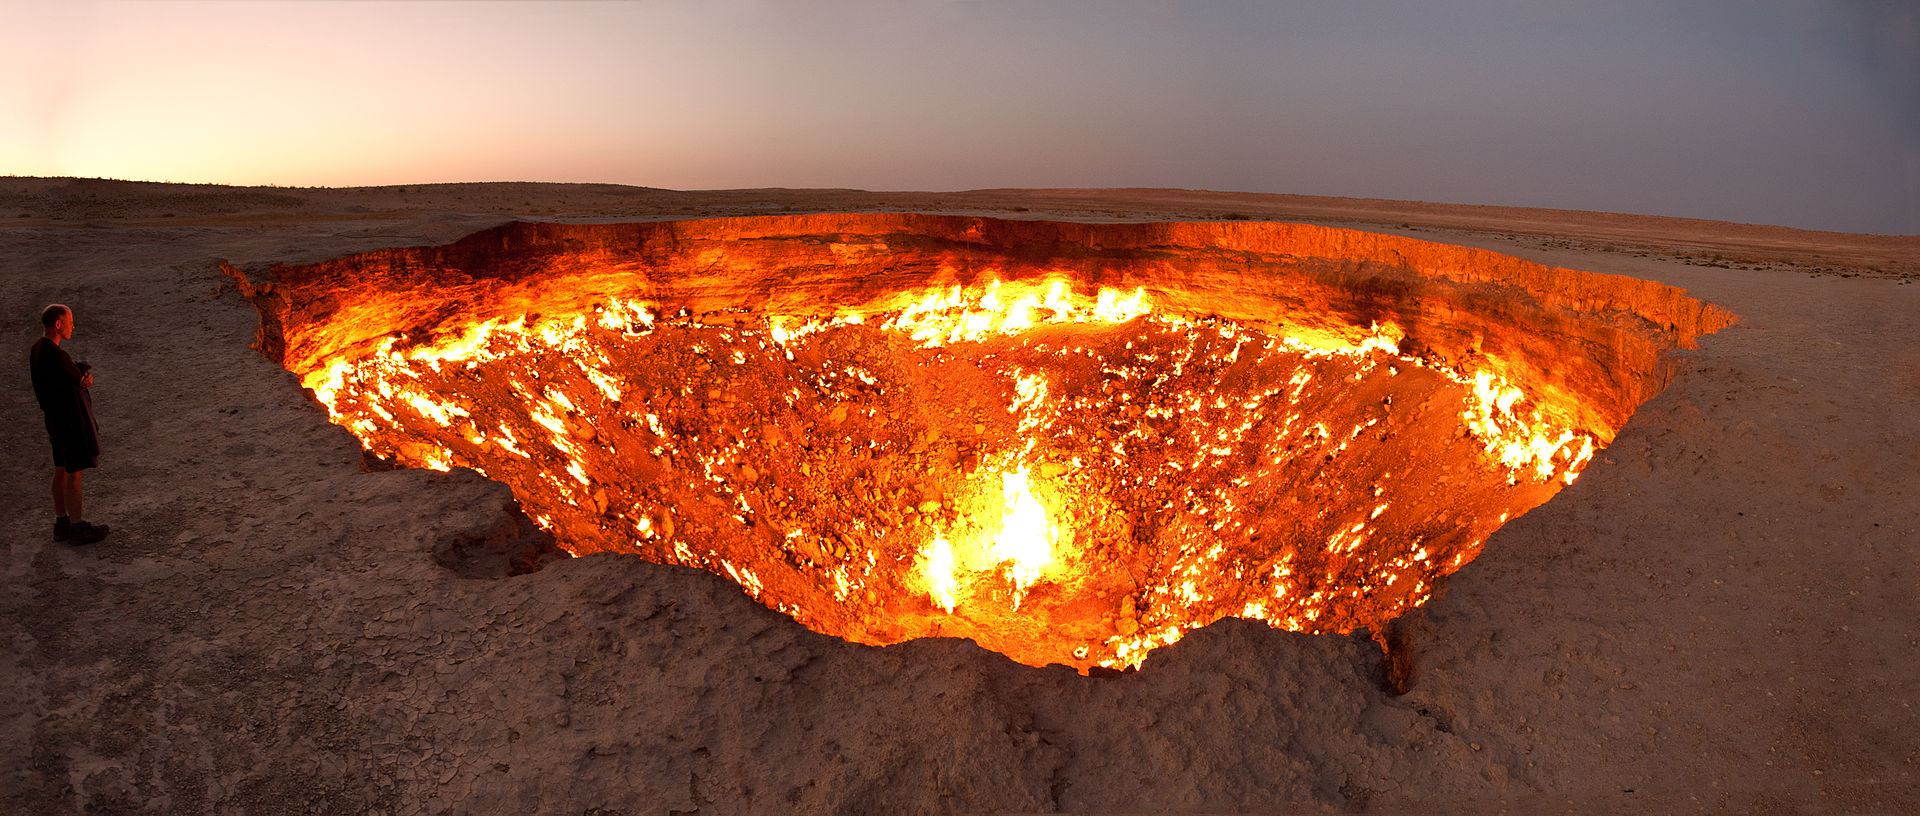 Darvasa_gas_crater_panorama